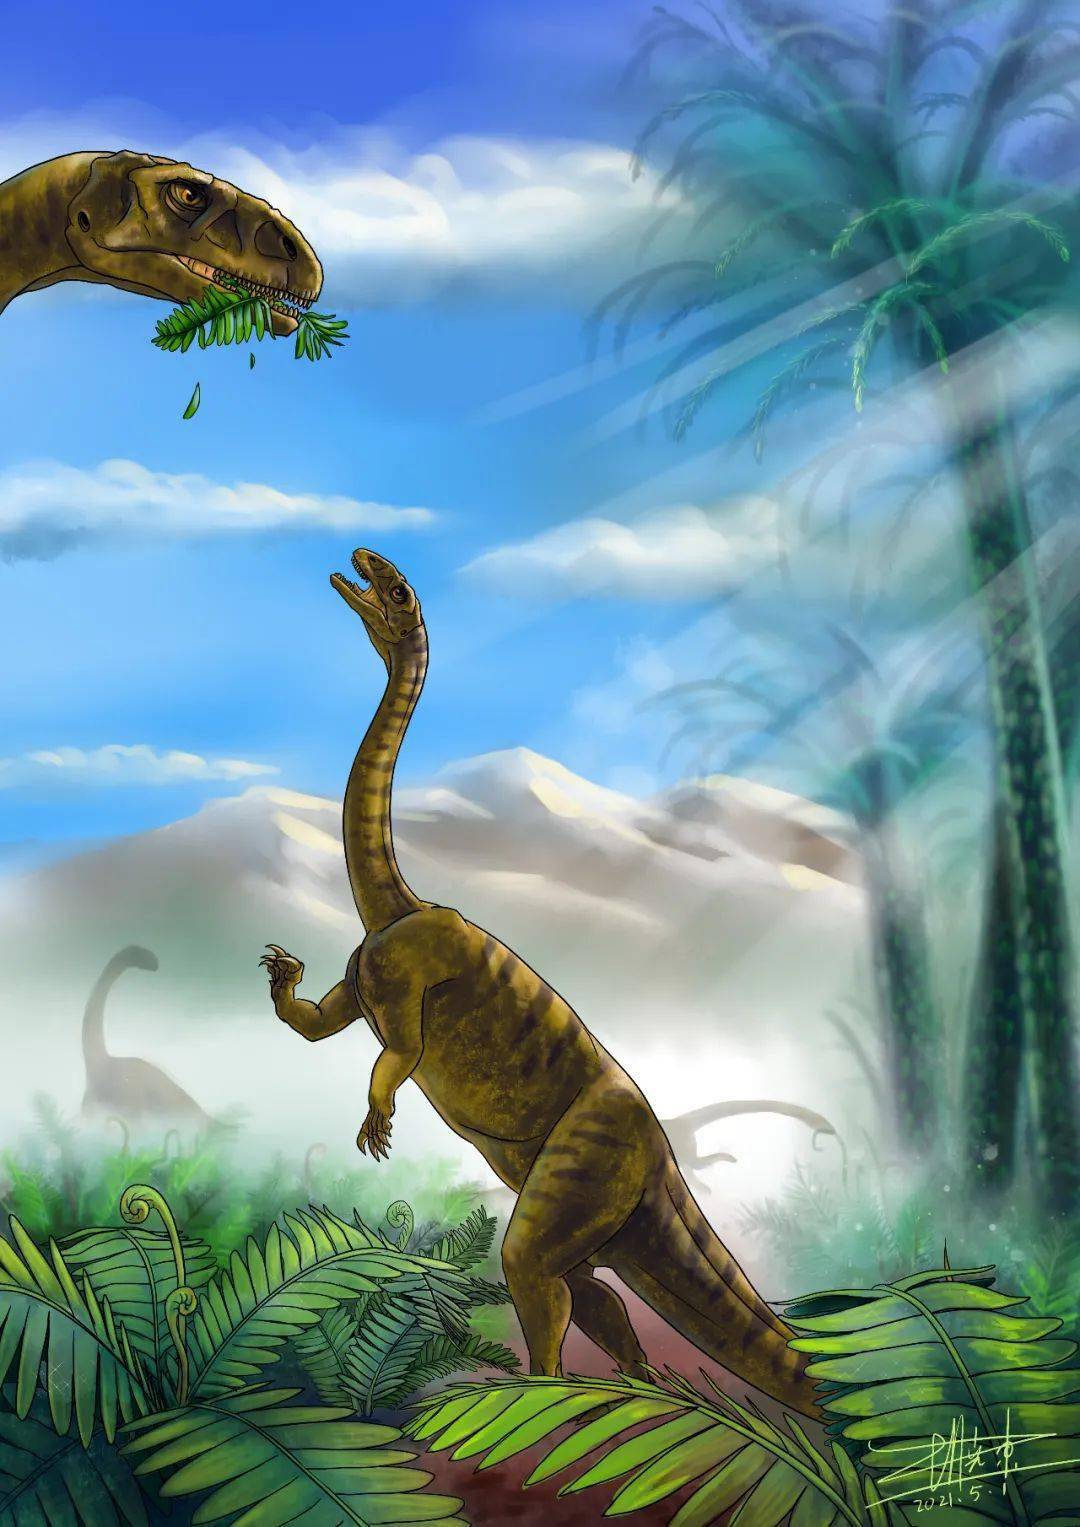 禄丰发现3岁恐龙幼体化石,体长1.7米,不属任何已知属种